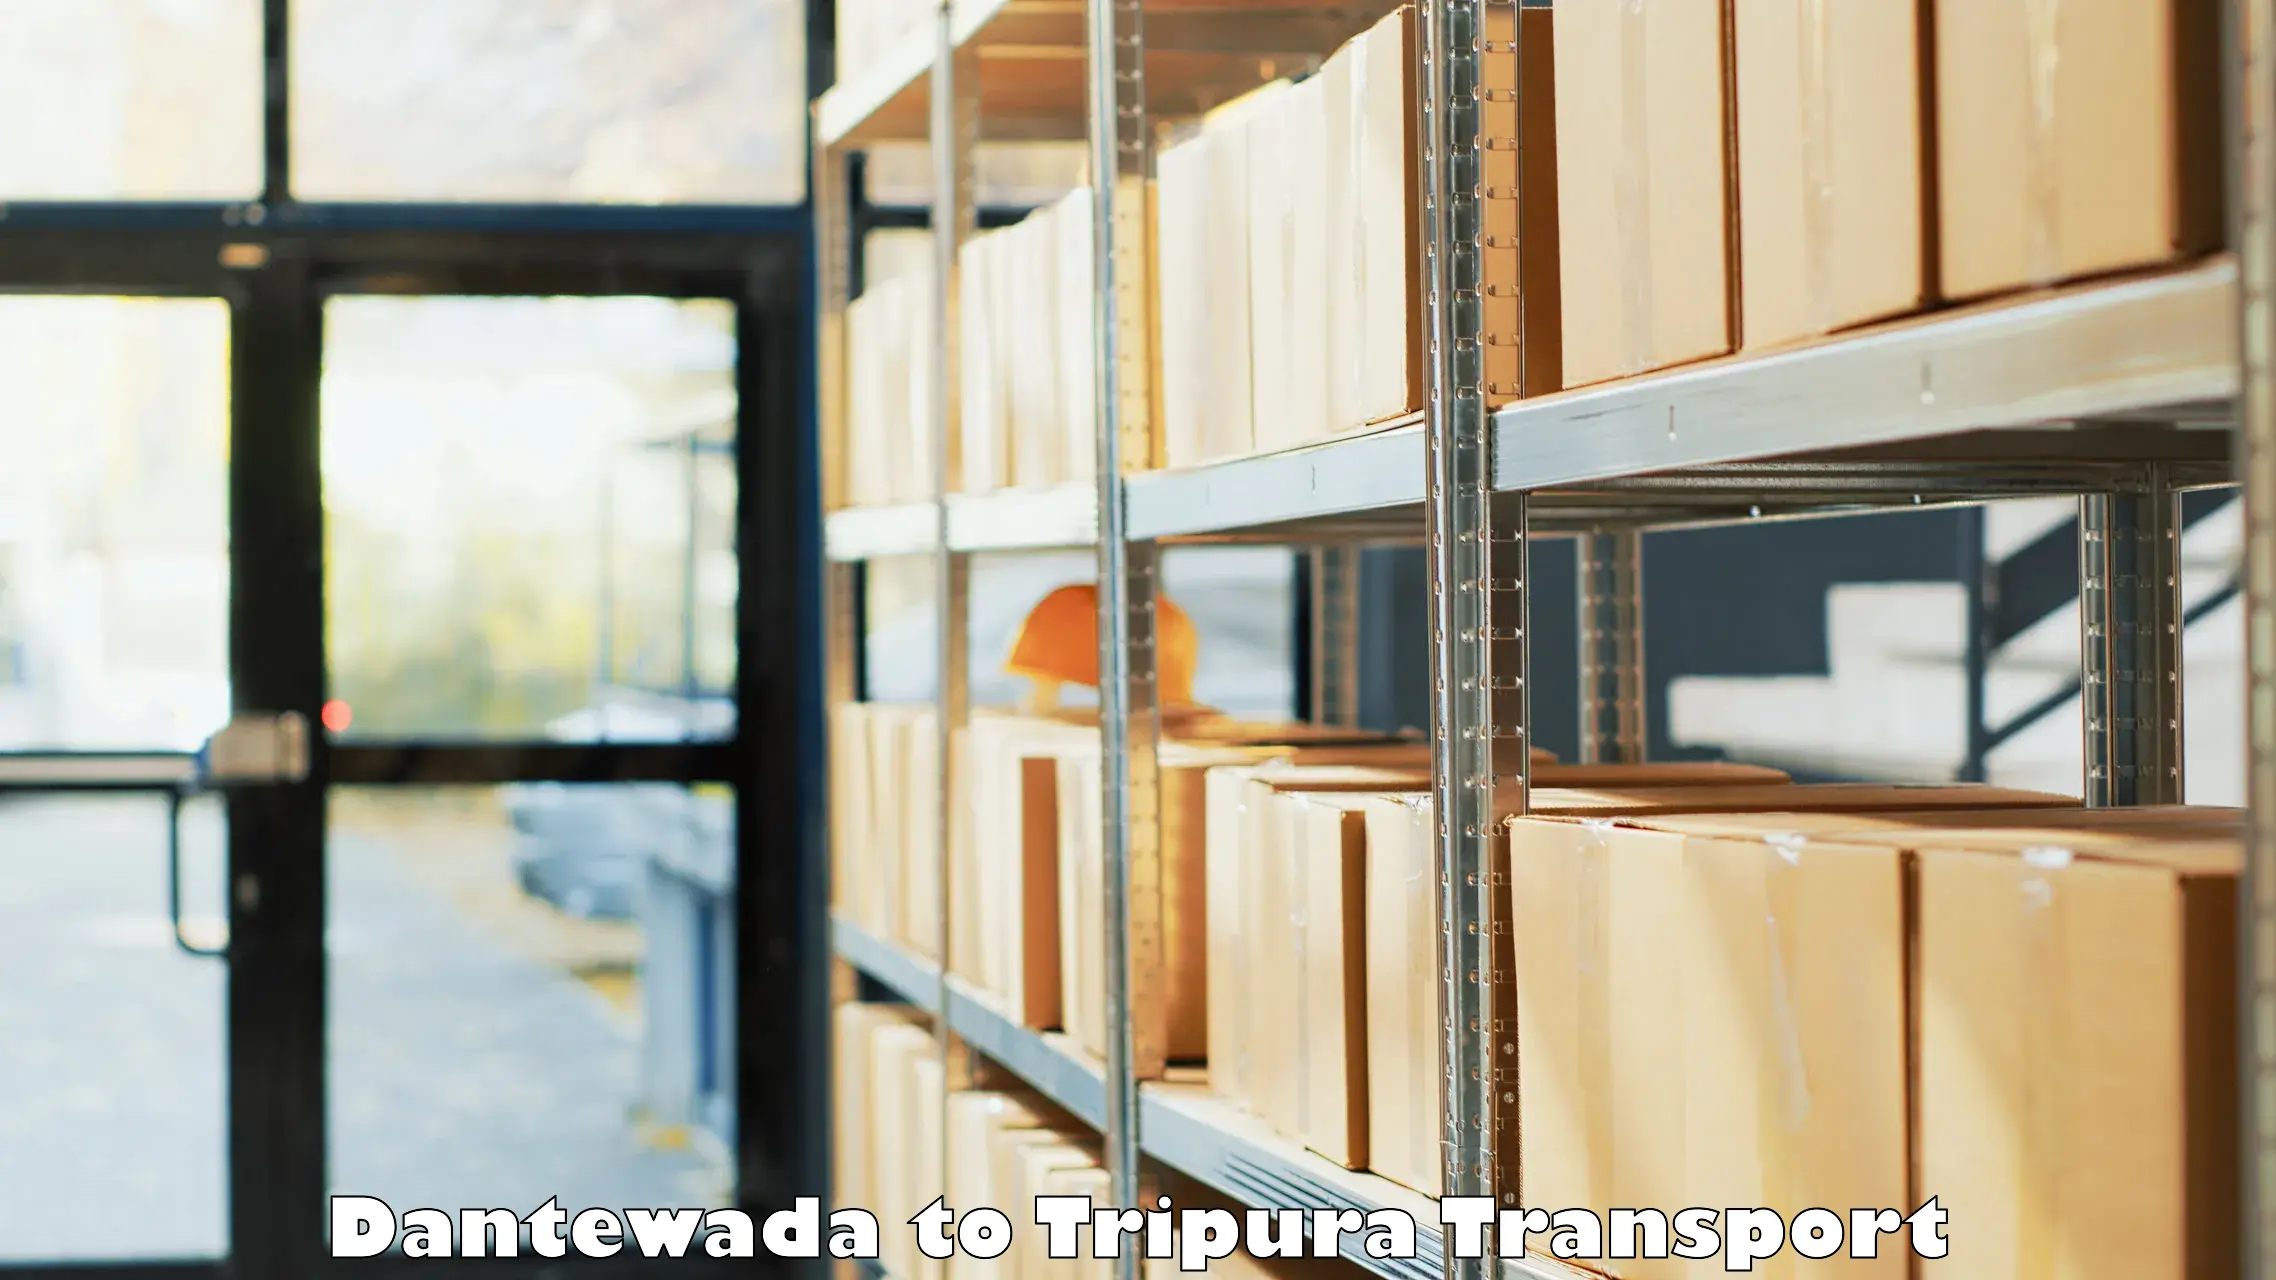 Furniture transport service Dantewada to West Tripura